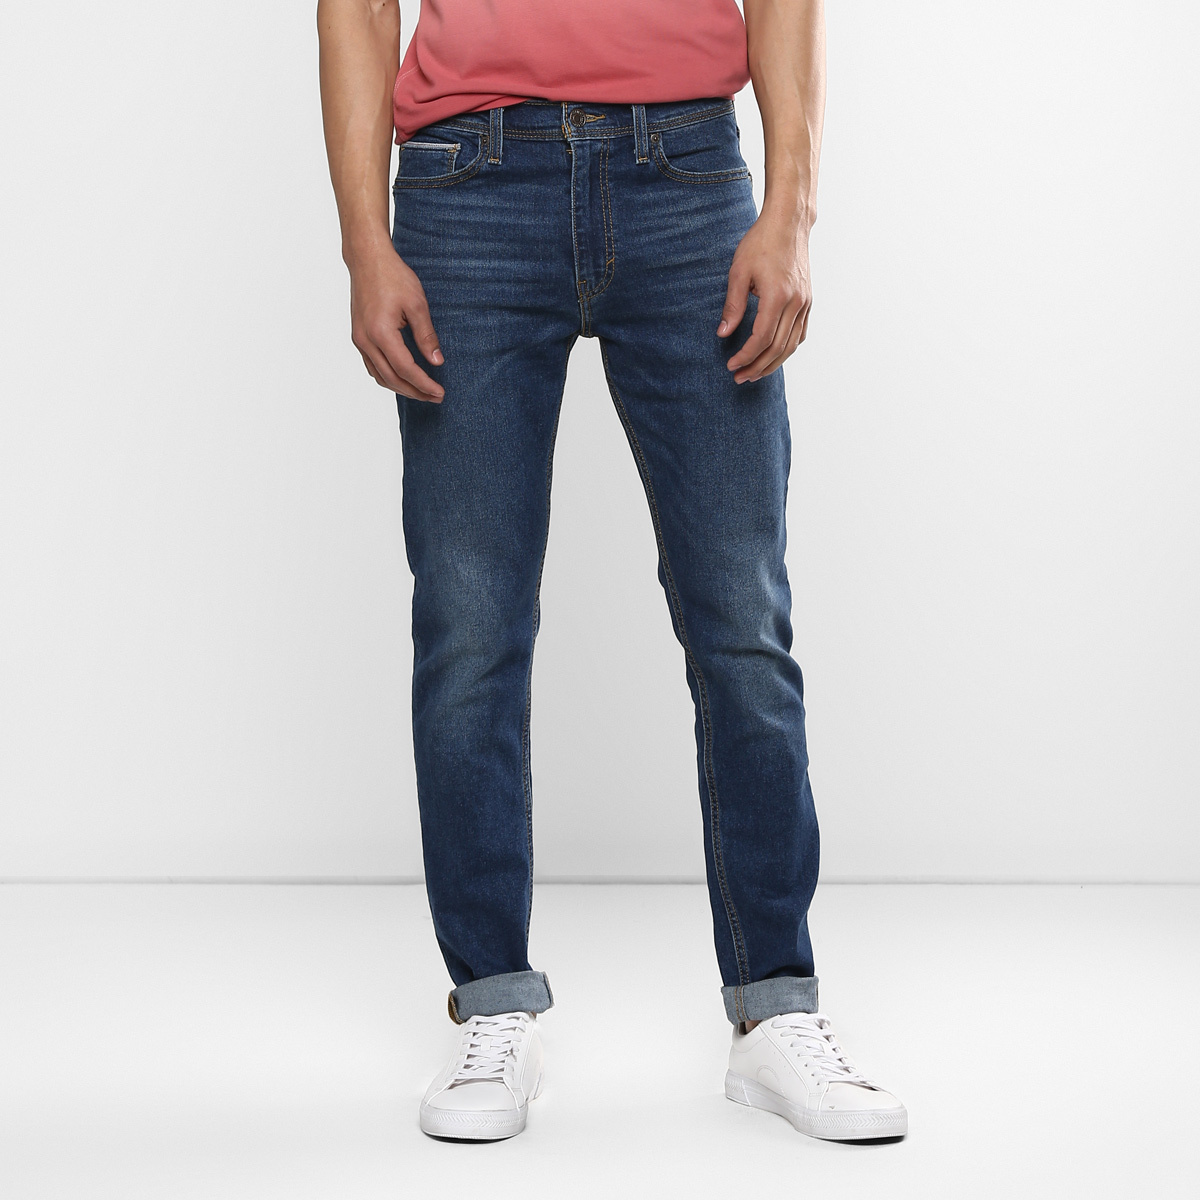 LEVIS MEN Single Length Jeans 86674-0001 Blue 32